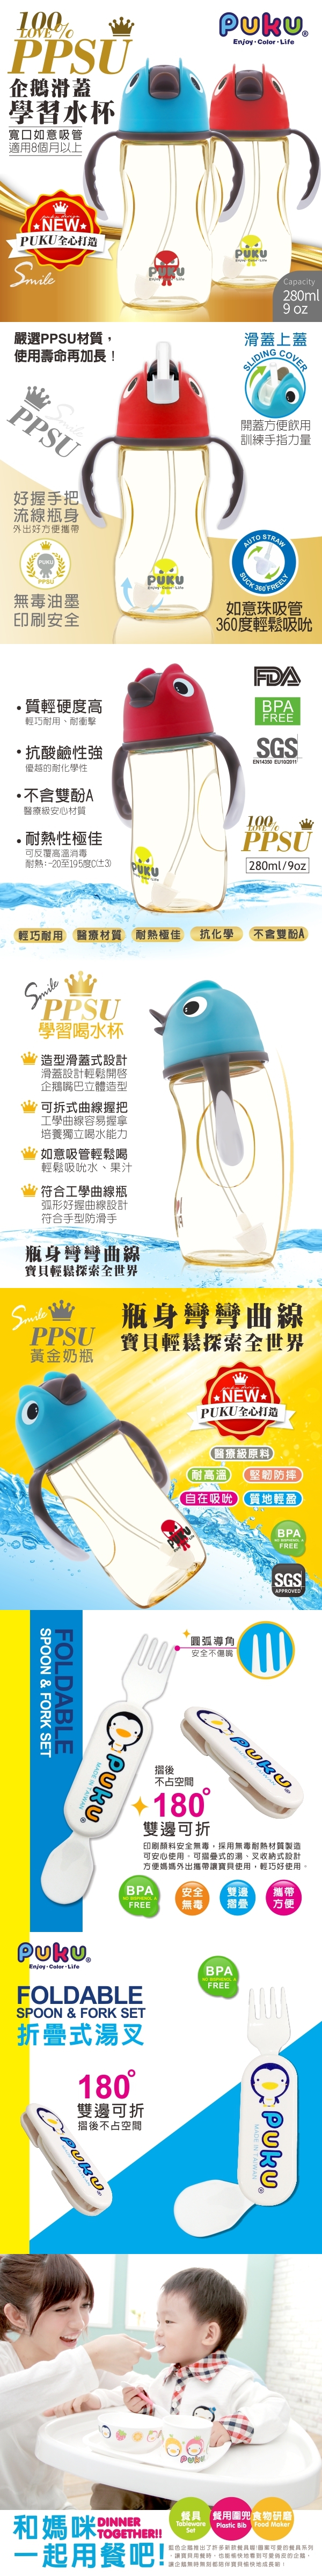 PUKU藍色企鵝-PPSU企鵝滑蓋學習水杯280ml(水色/紅色)P10822+送摺疊式湯叉(P14314)